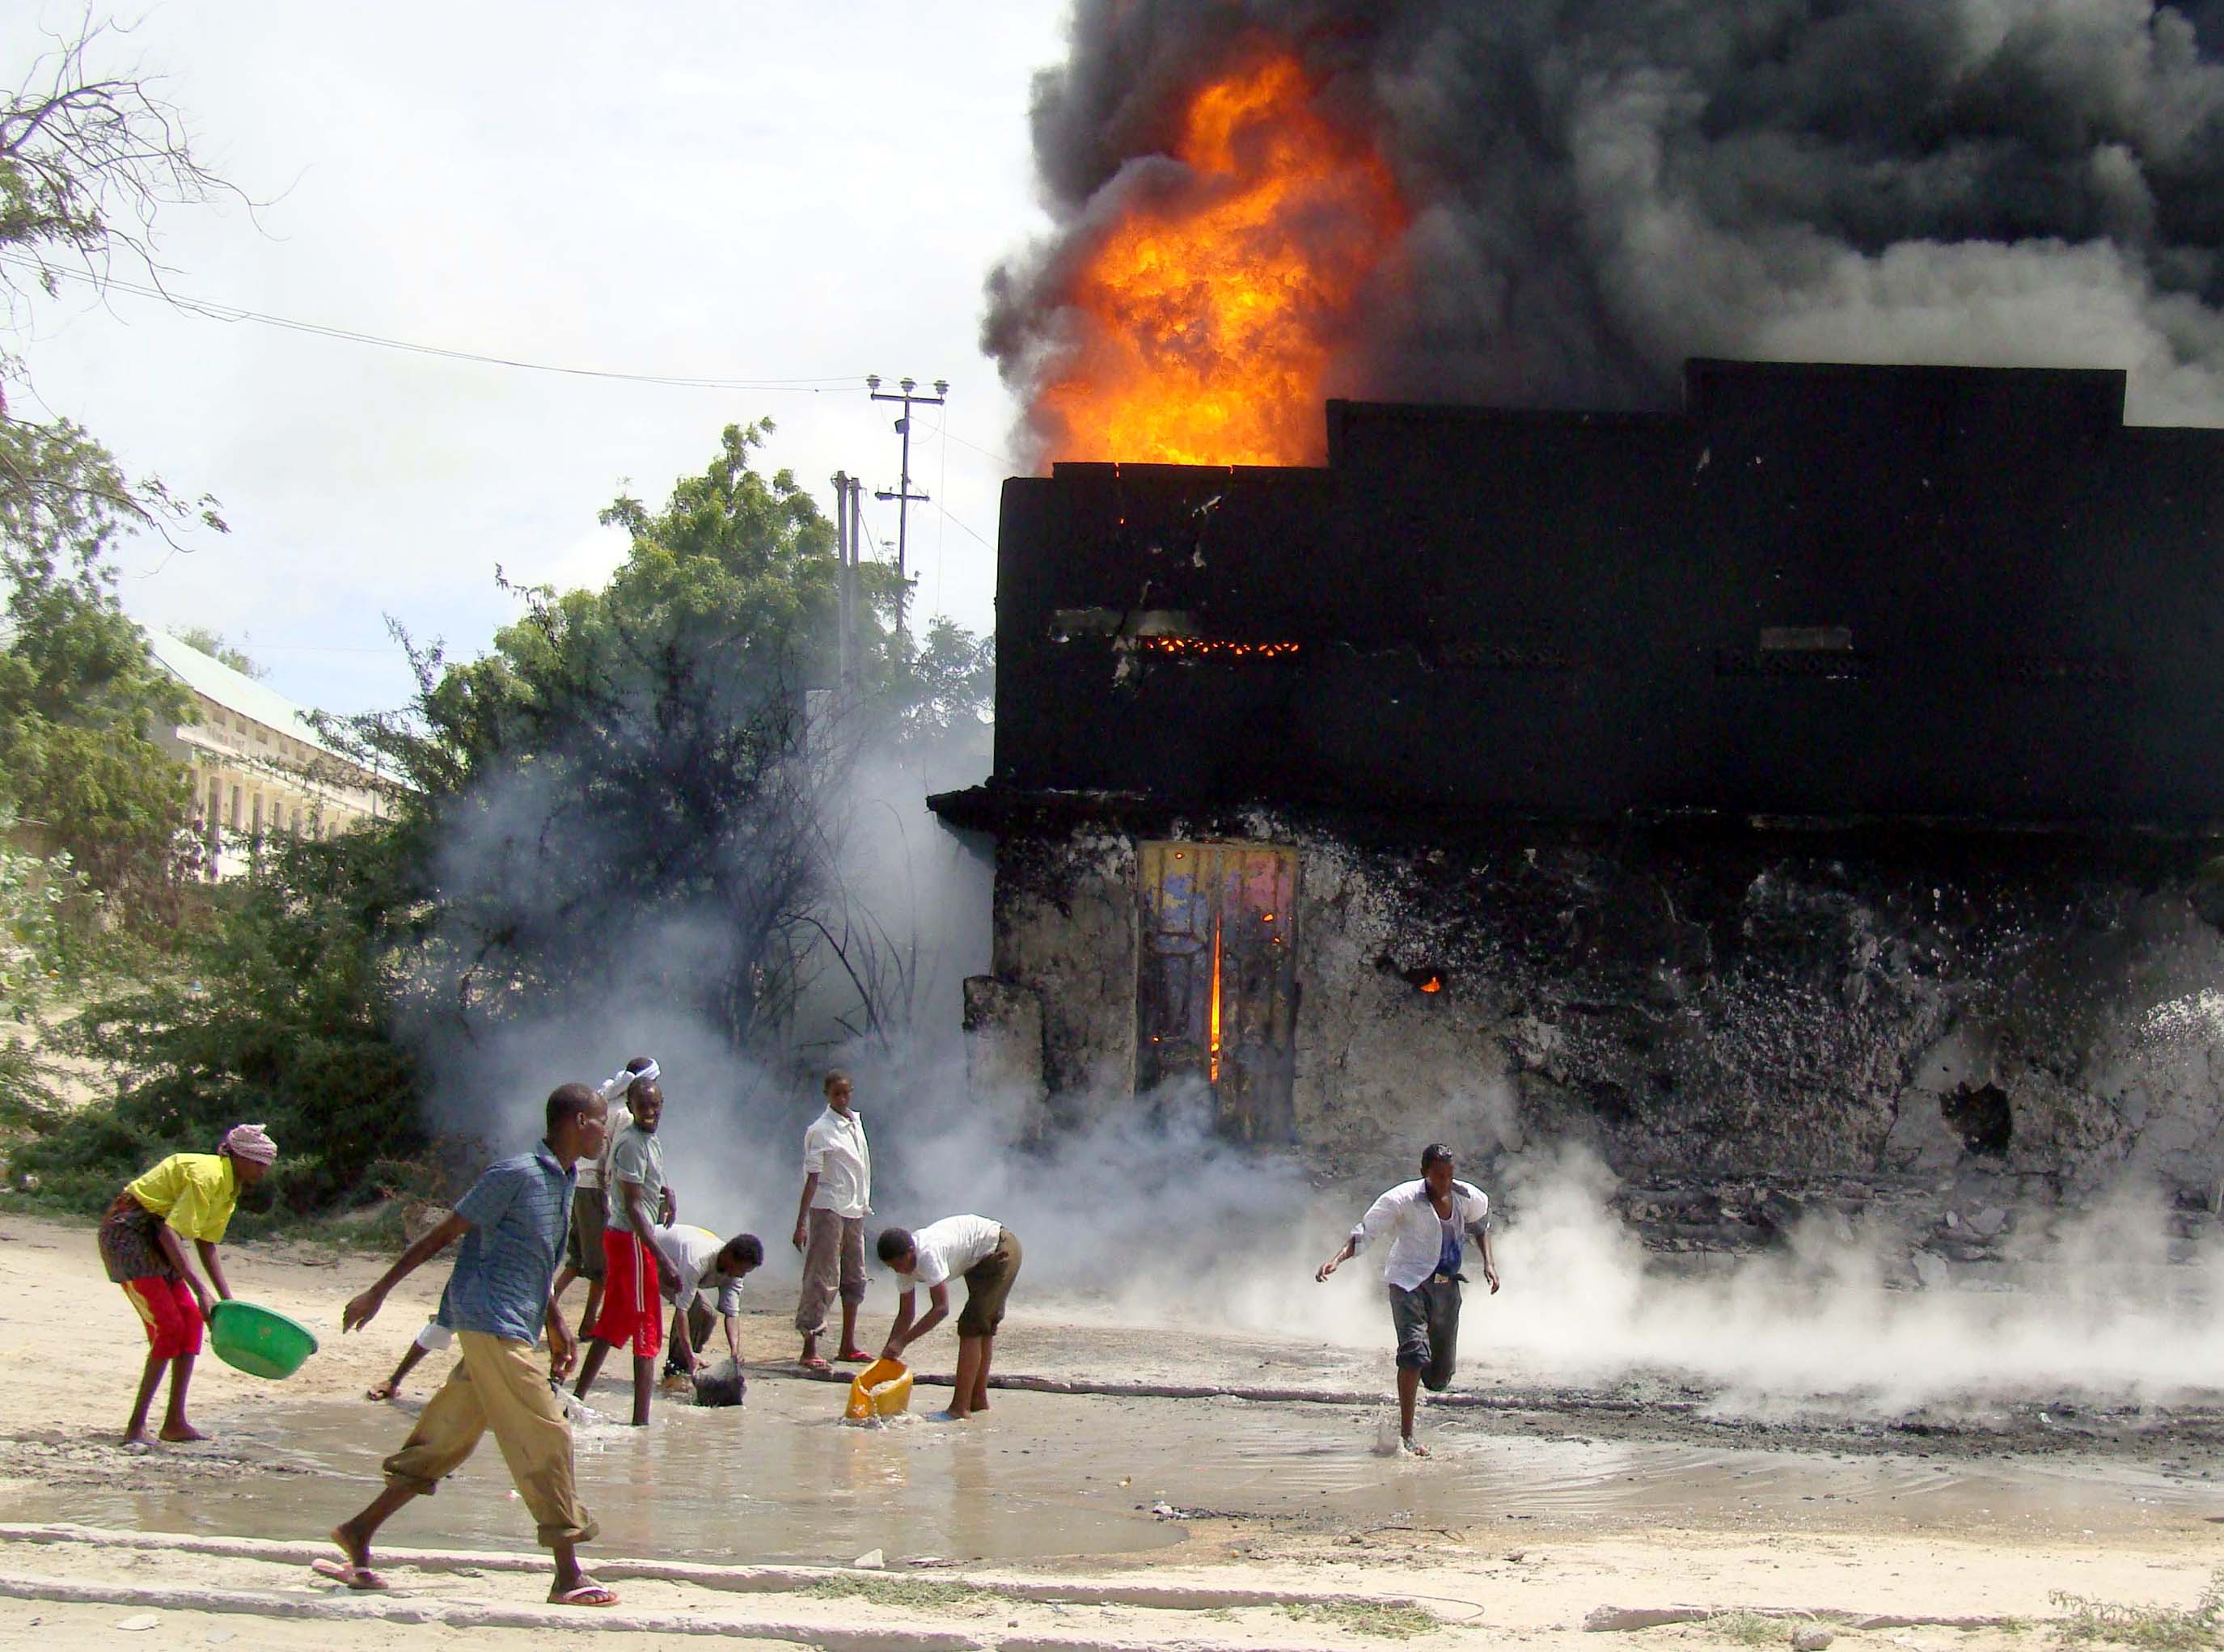 Βομβιστής αυτοκτονίας σκότωσε τρεις ανθρώπους σε εστιατόριο στη Σομαλία